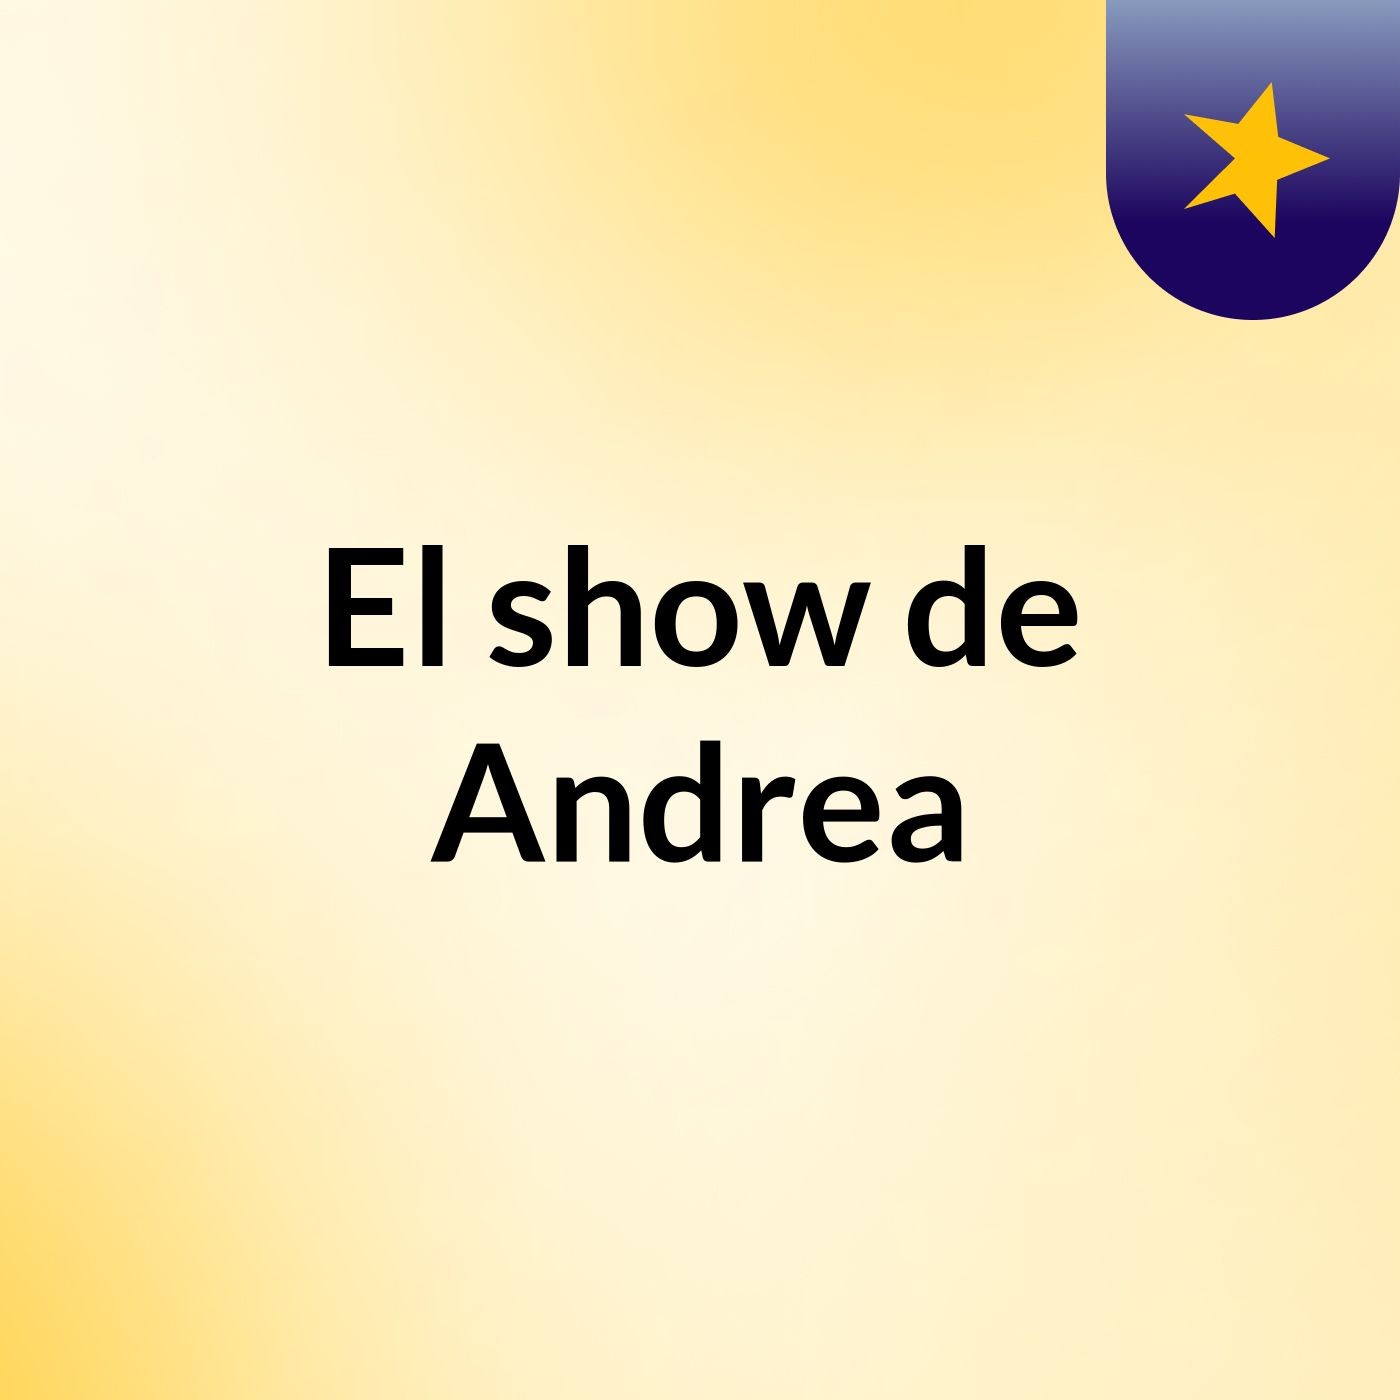 El show de Andrea